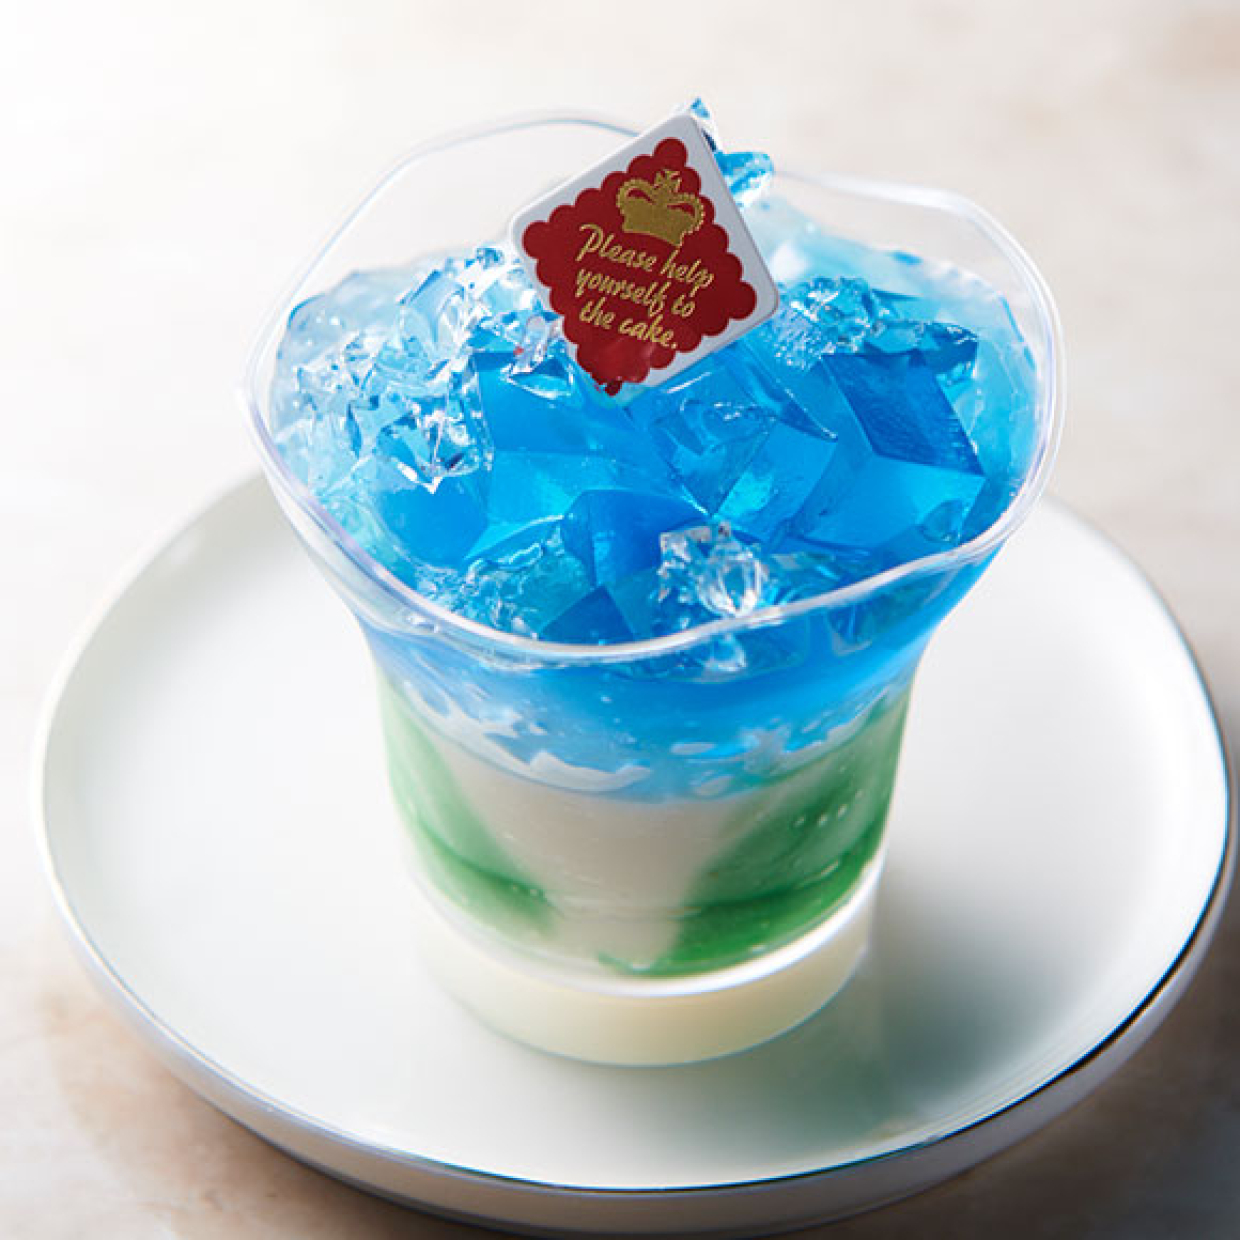  【シャトレーゼ】「バタフライピーのカップデザート」は食べる前も色の変化で楽しめる新感覚スイーツ 